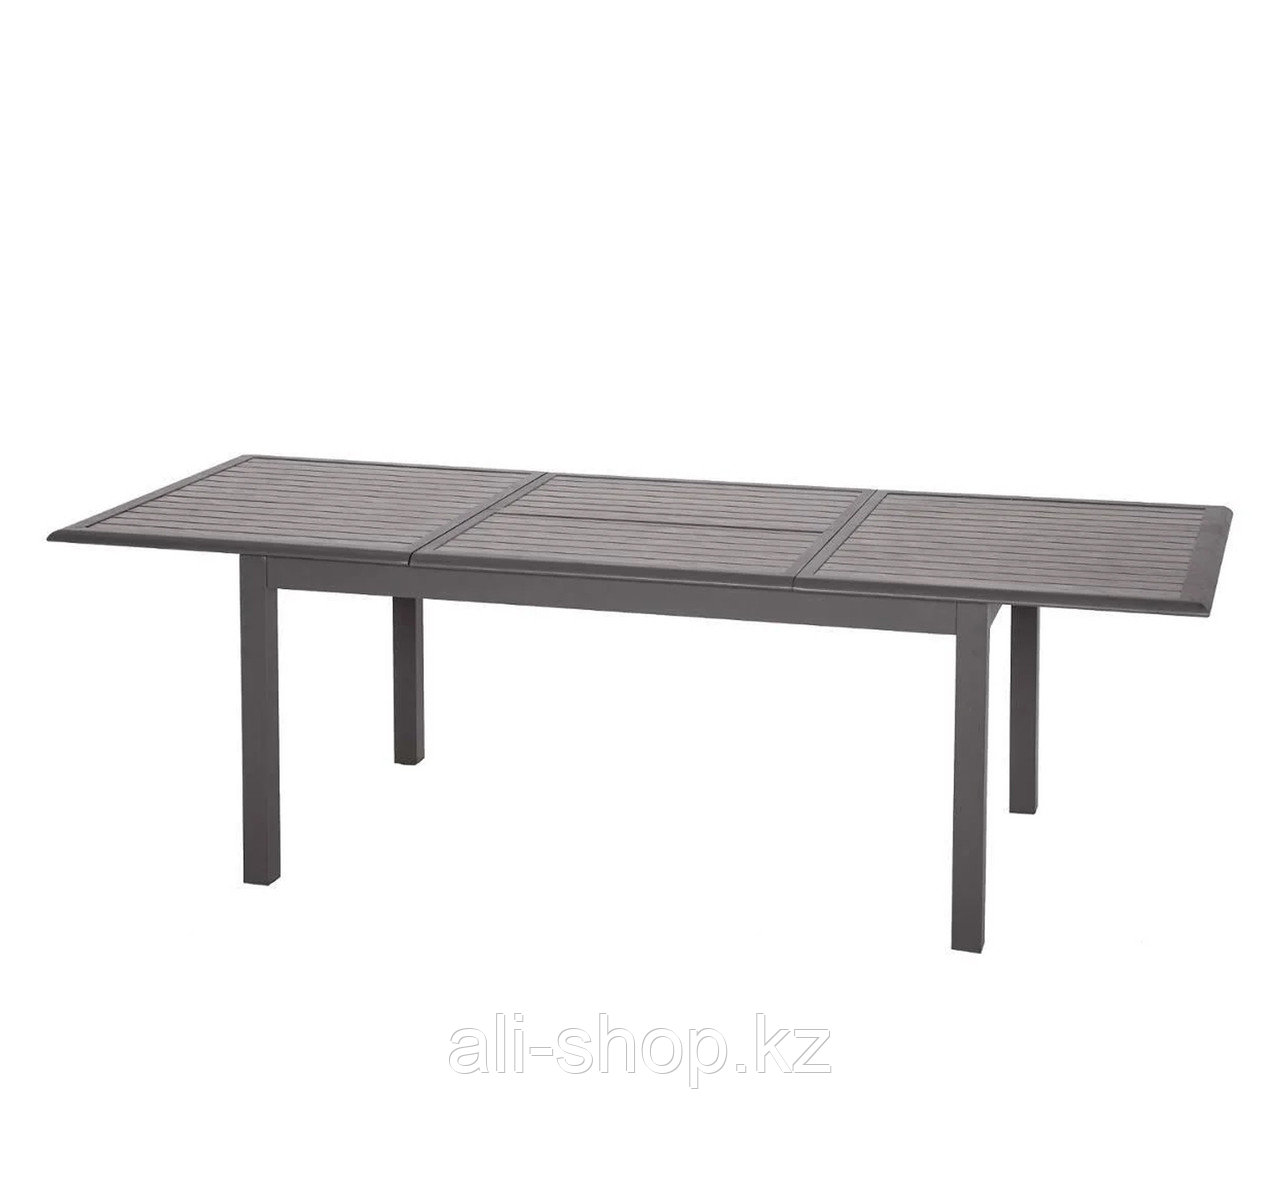 Обеденный стол 3х1м Azua (раздвижной)